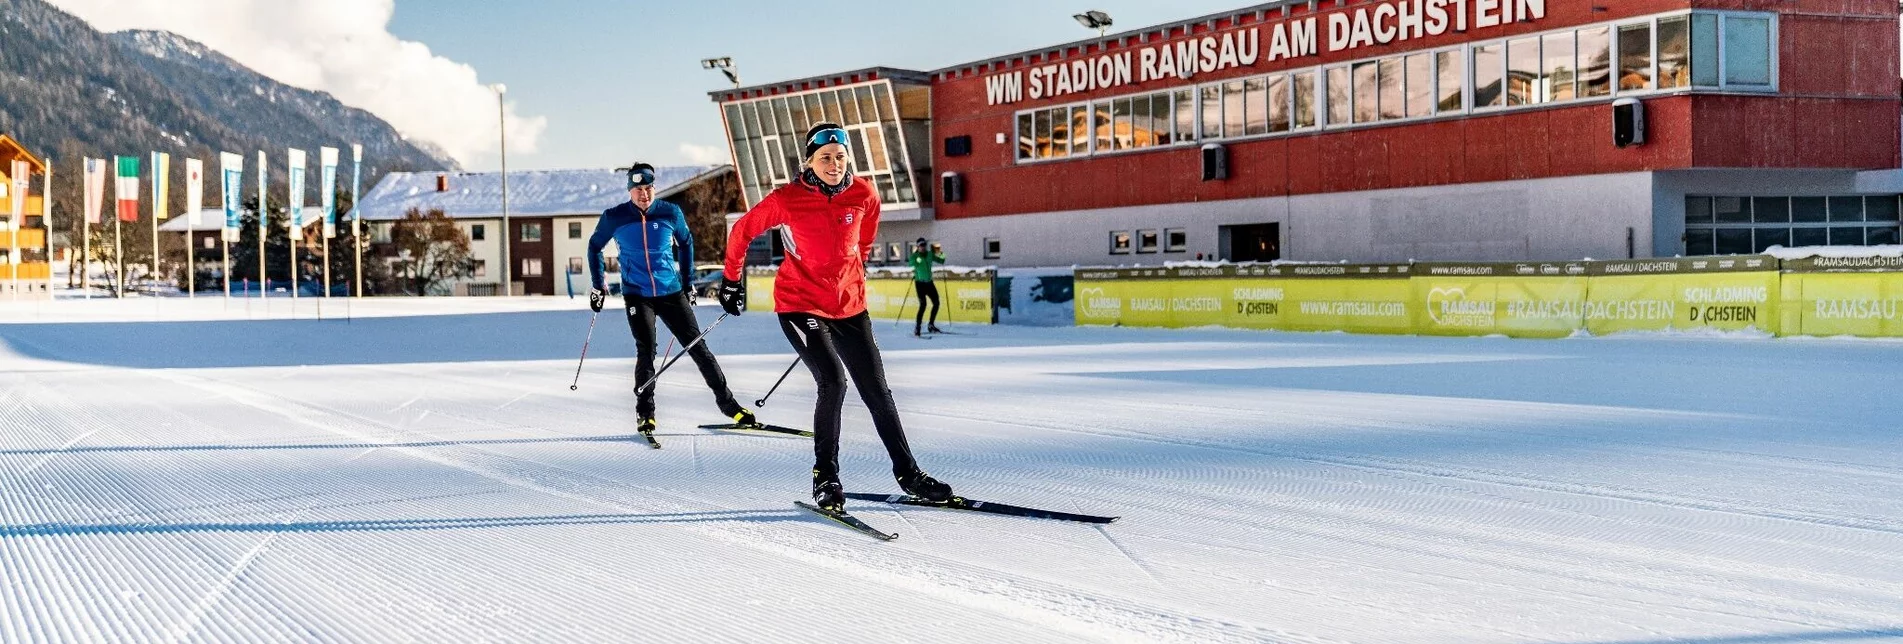 Cross-Country Skiing Stadium XC Trail - Touren-Impression #1 | © Erlebnisregion Schladming-Dachstein